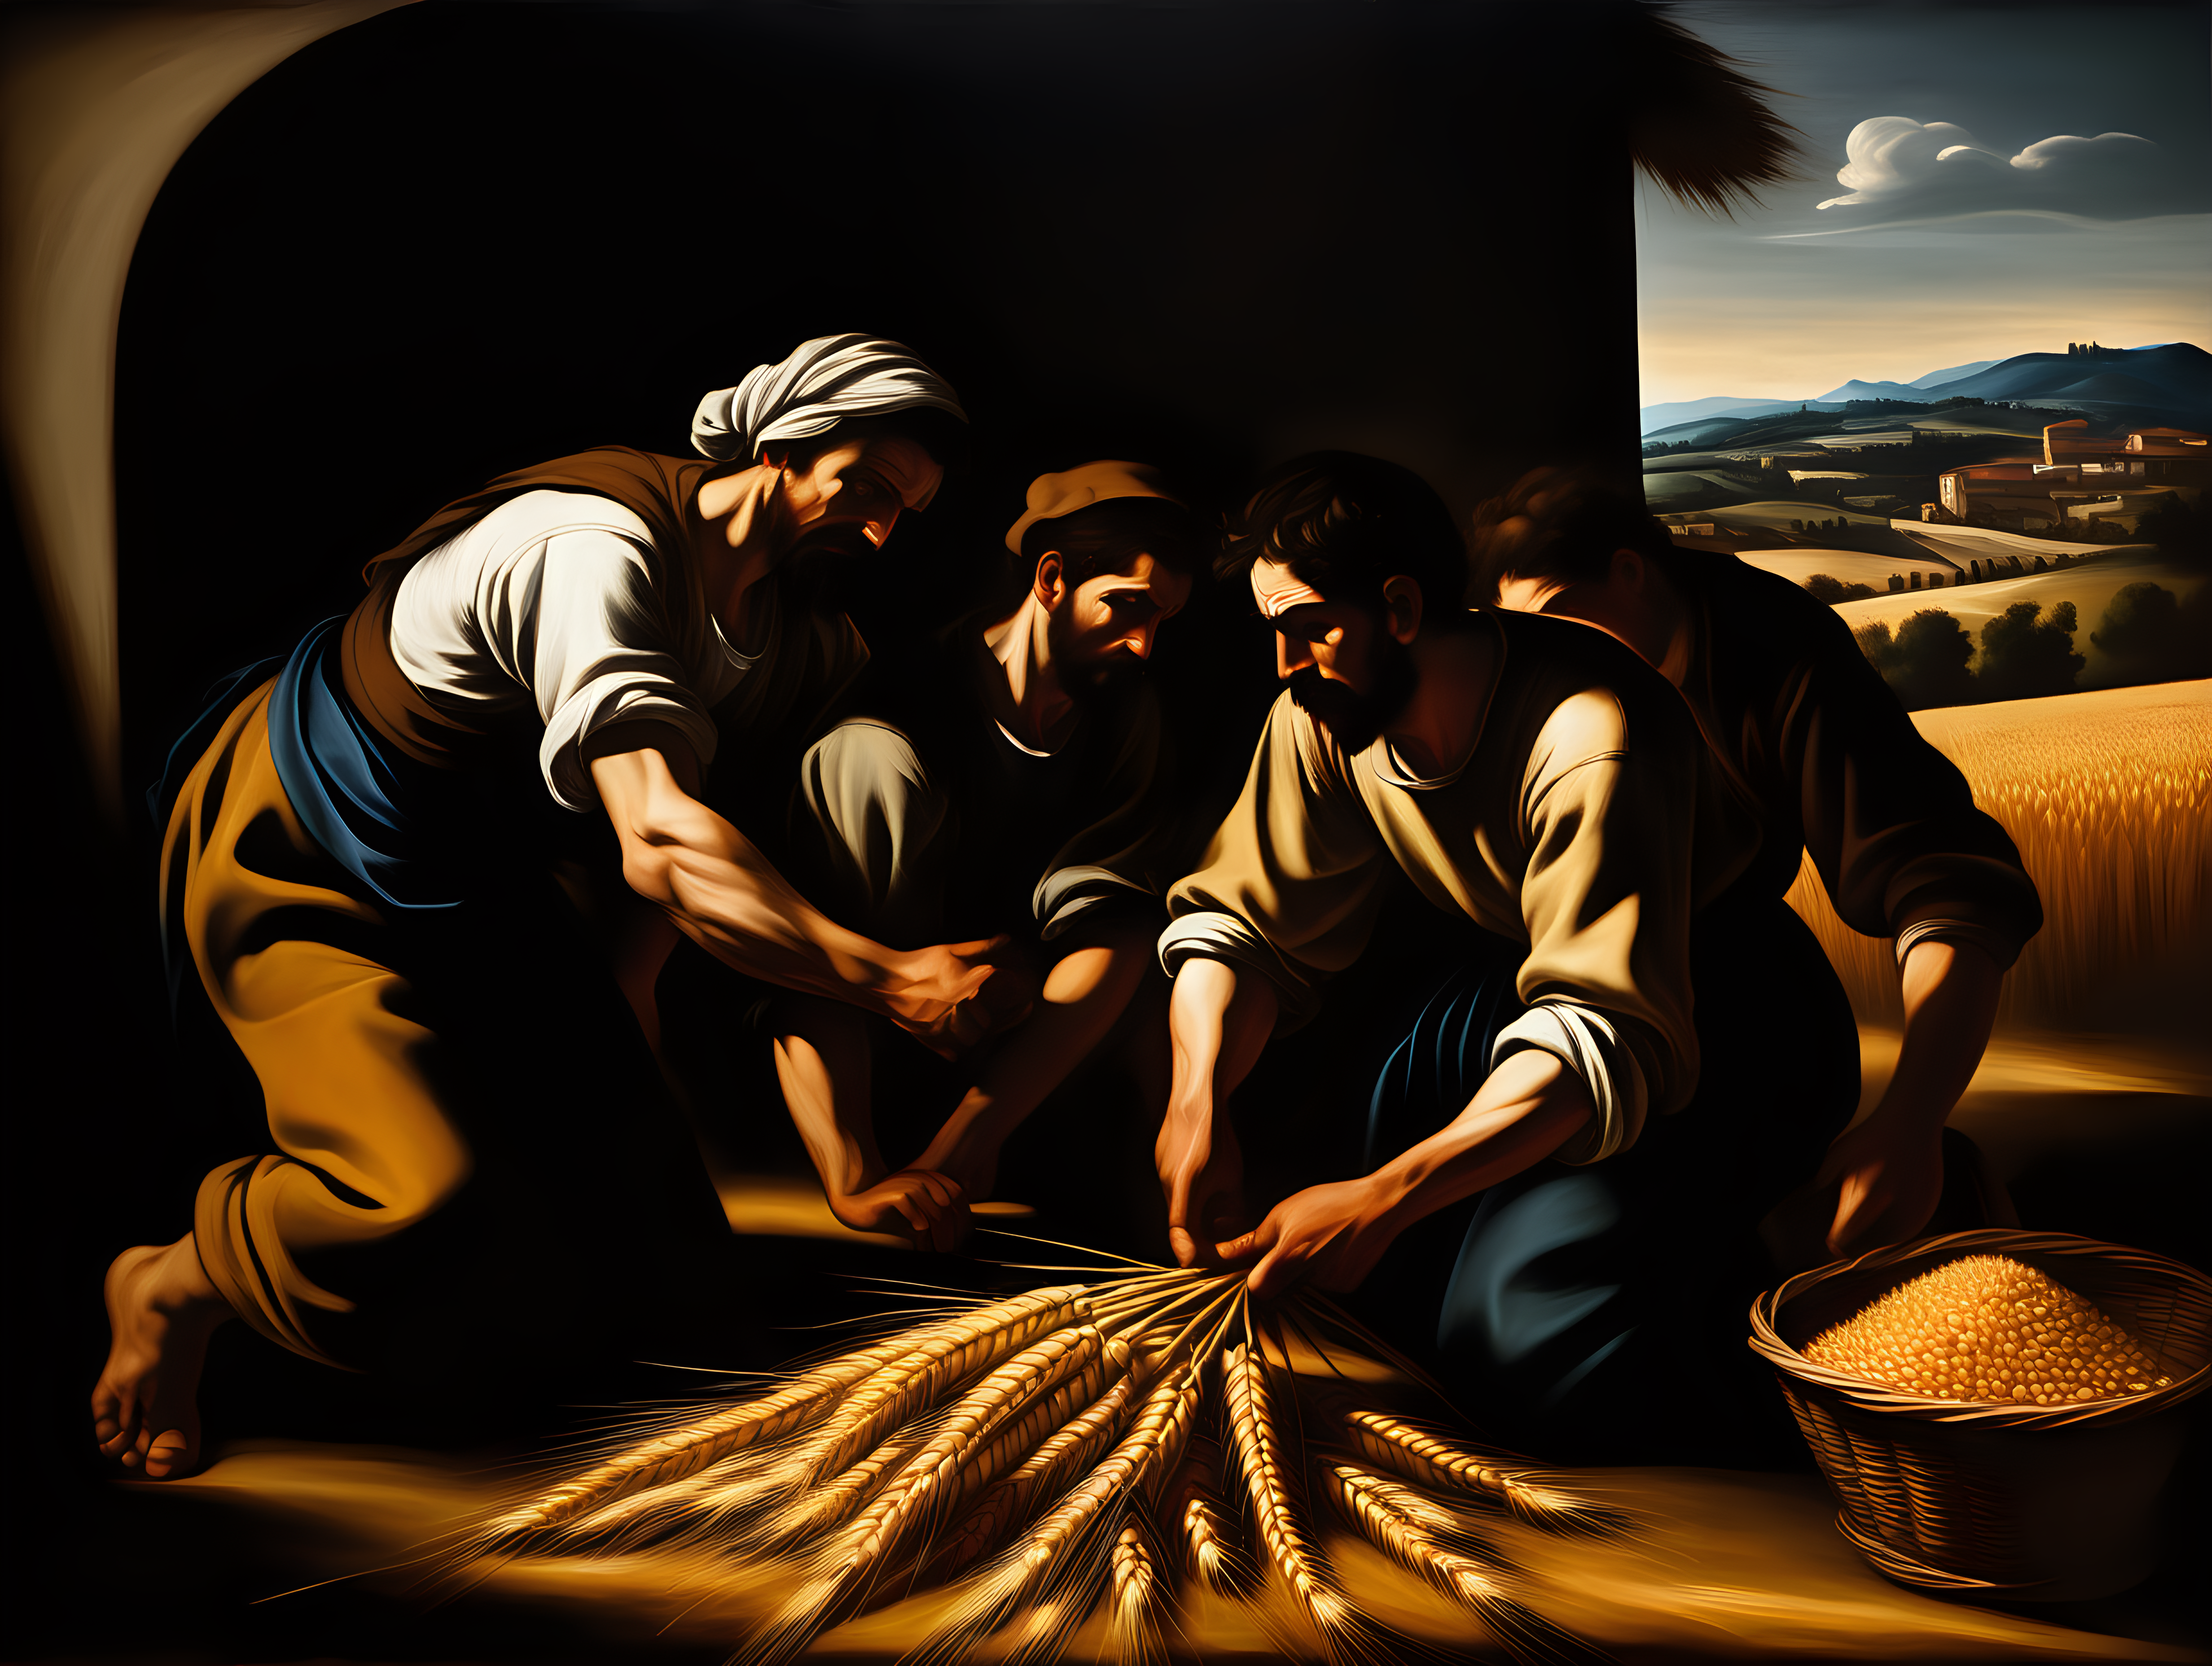 scène paysanne de moisson du blé type Caravage, avec clair obscure, peinture à l'huile